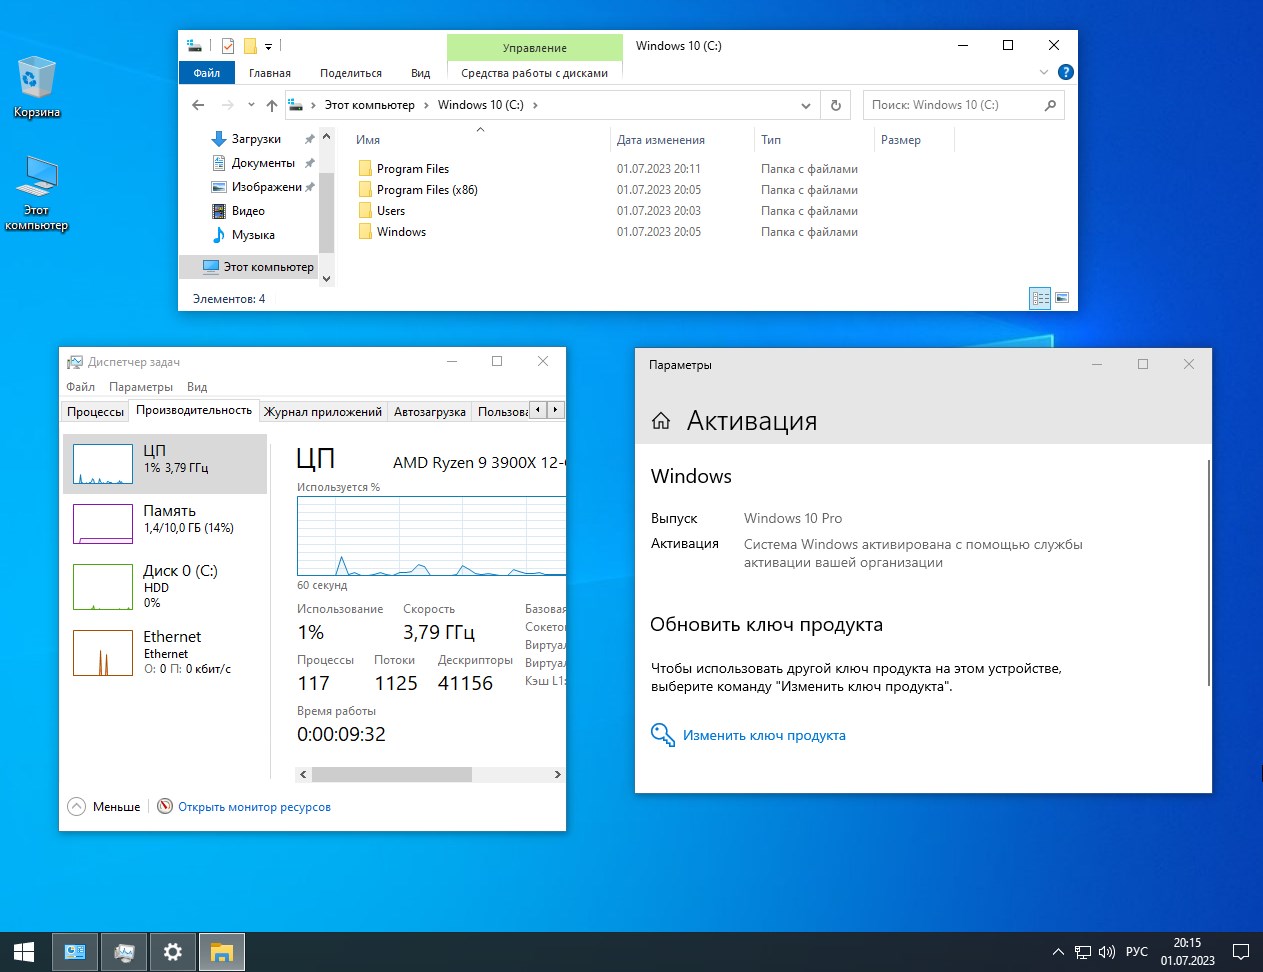  Скачать Windows 10 Lite ISO 22H2 x64 + Office на Русском без телеметрии без торрент бесплатно